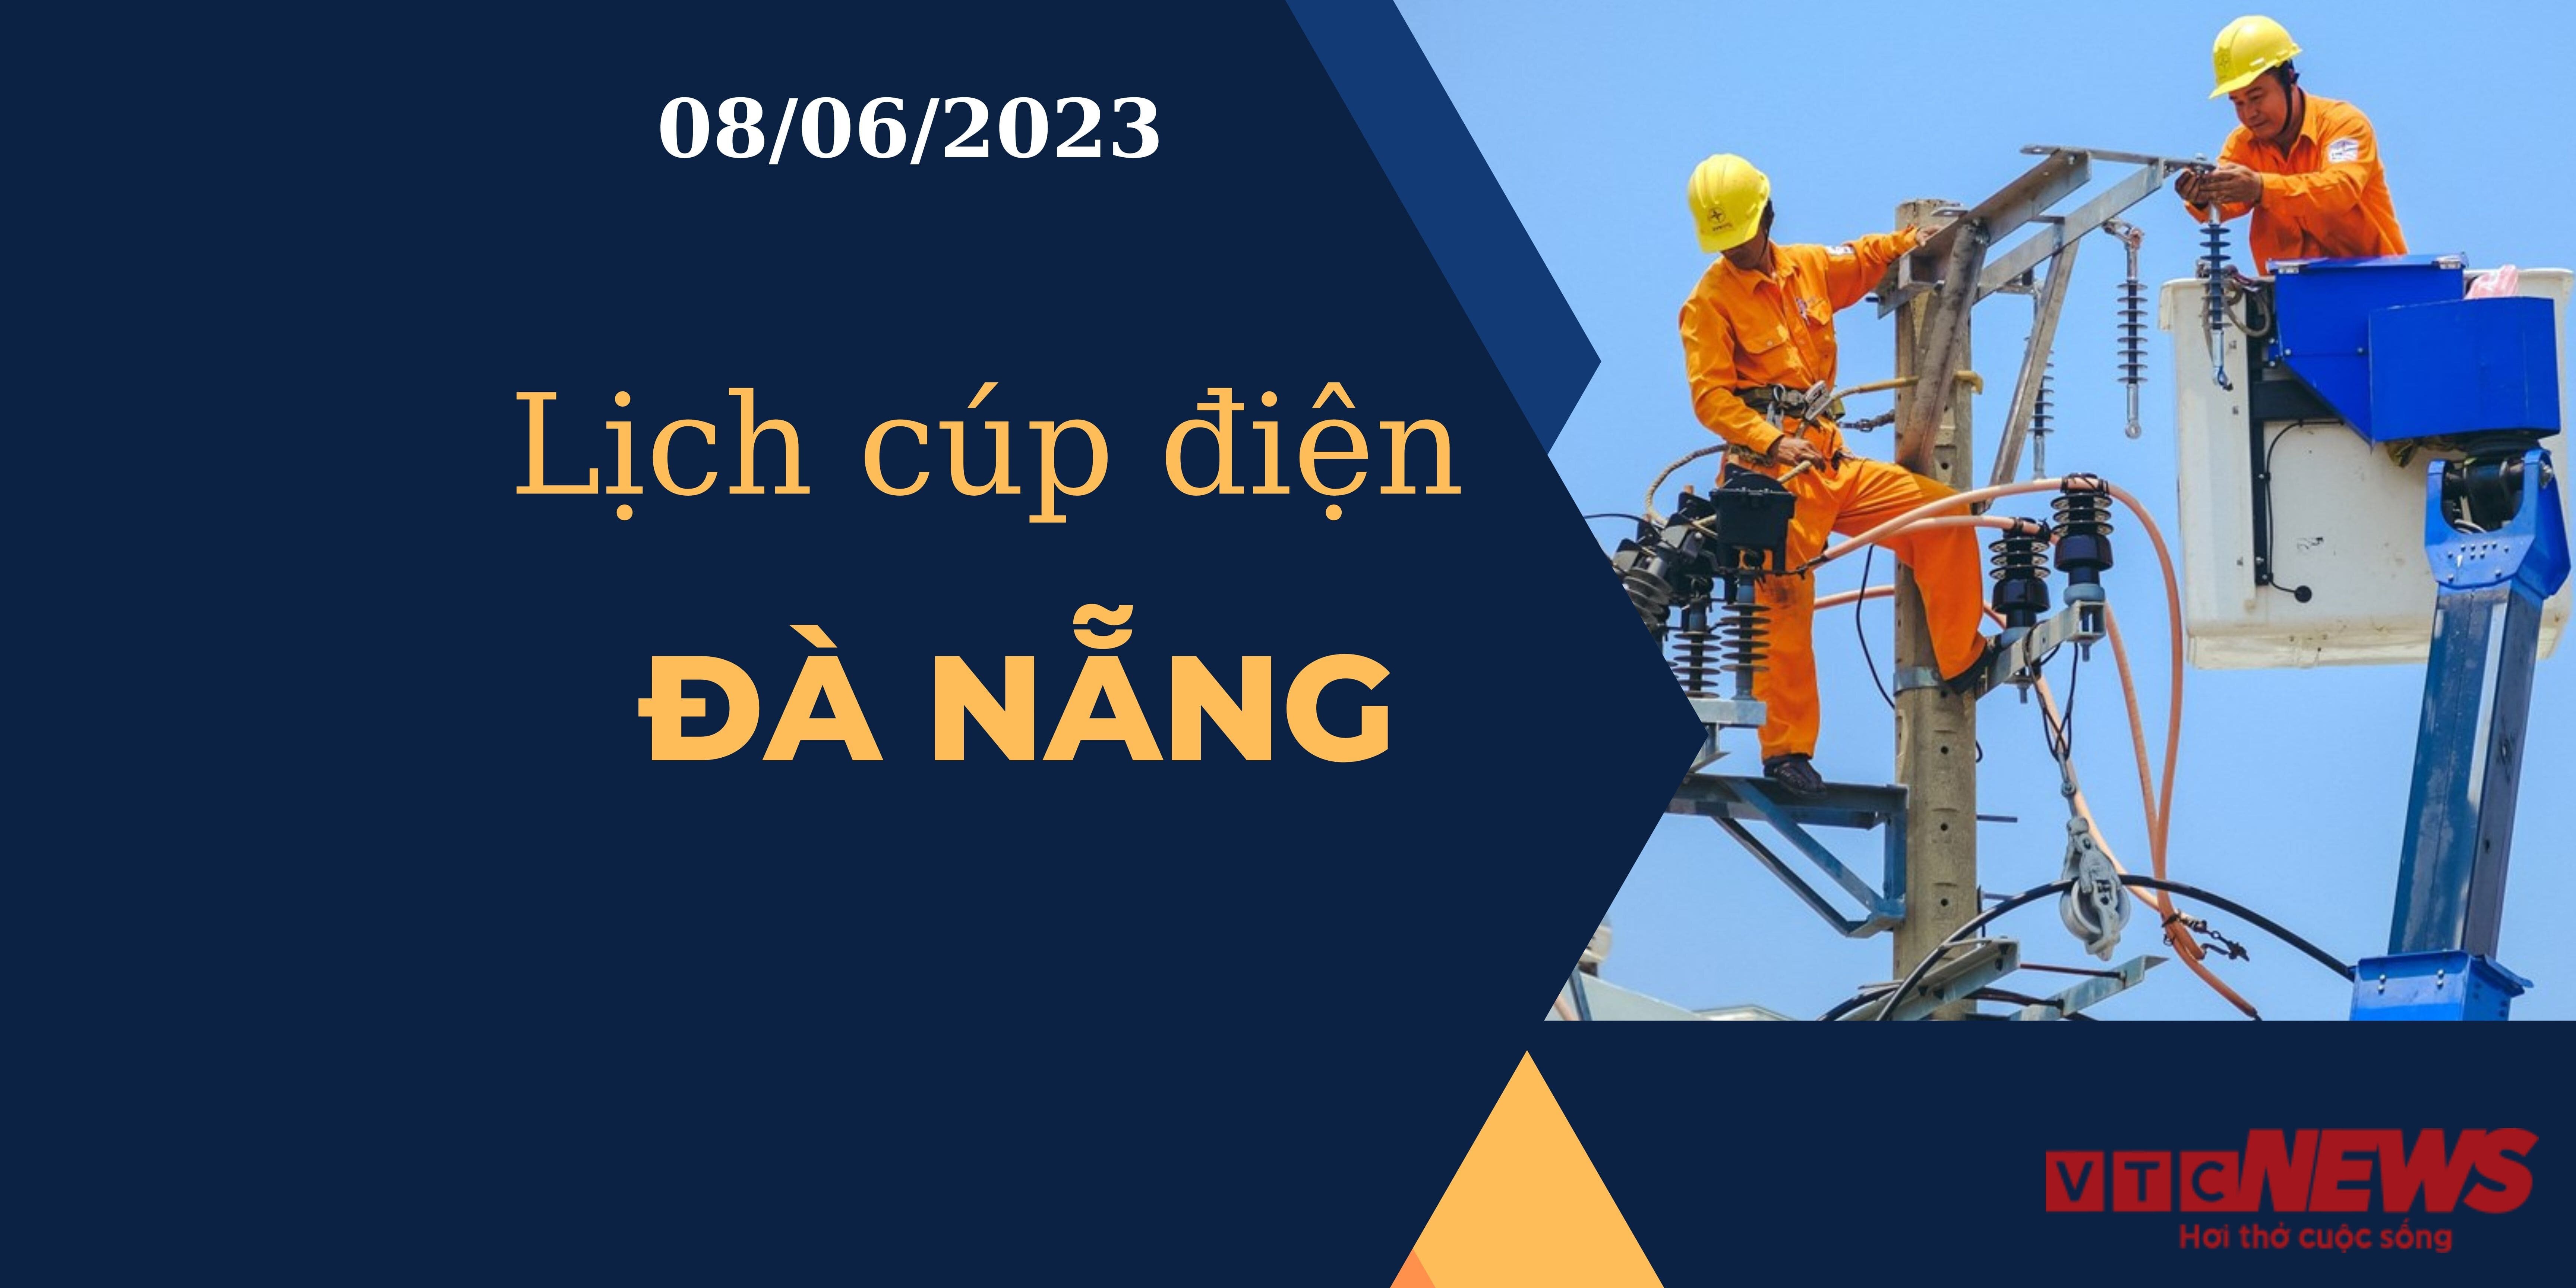 Lịch cúp điện hôm nay tại Đà Nẵng ngày 08/06/2023 - 1